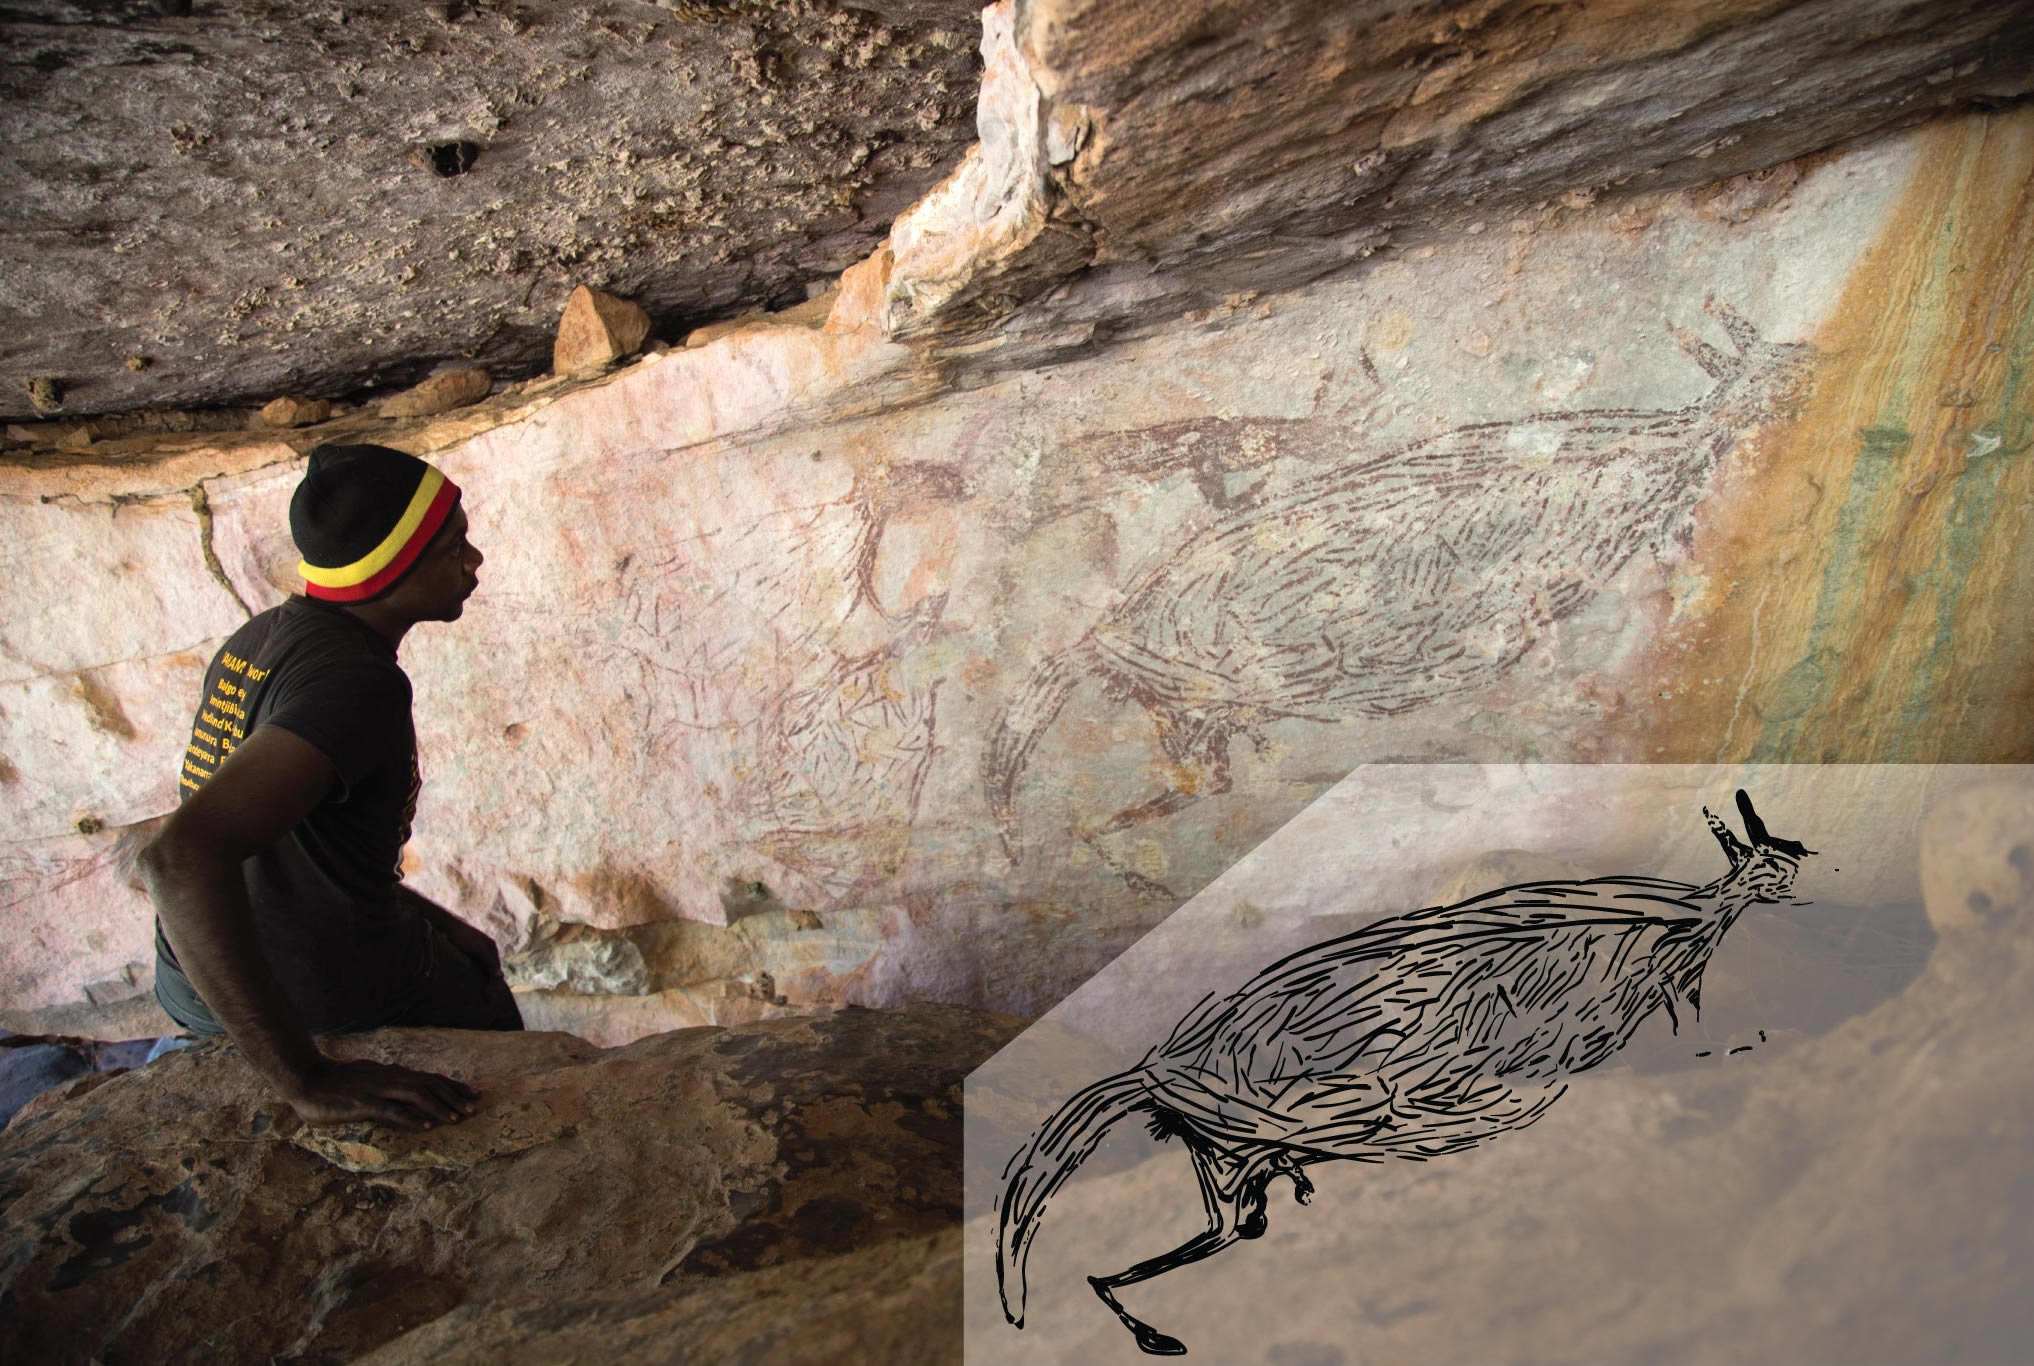 澳大利亚最古老的完整岩画——袋鼠画距今约1.73万年